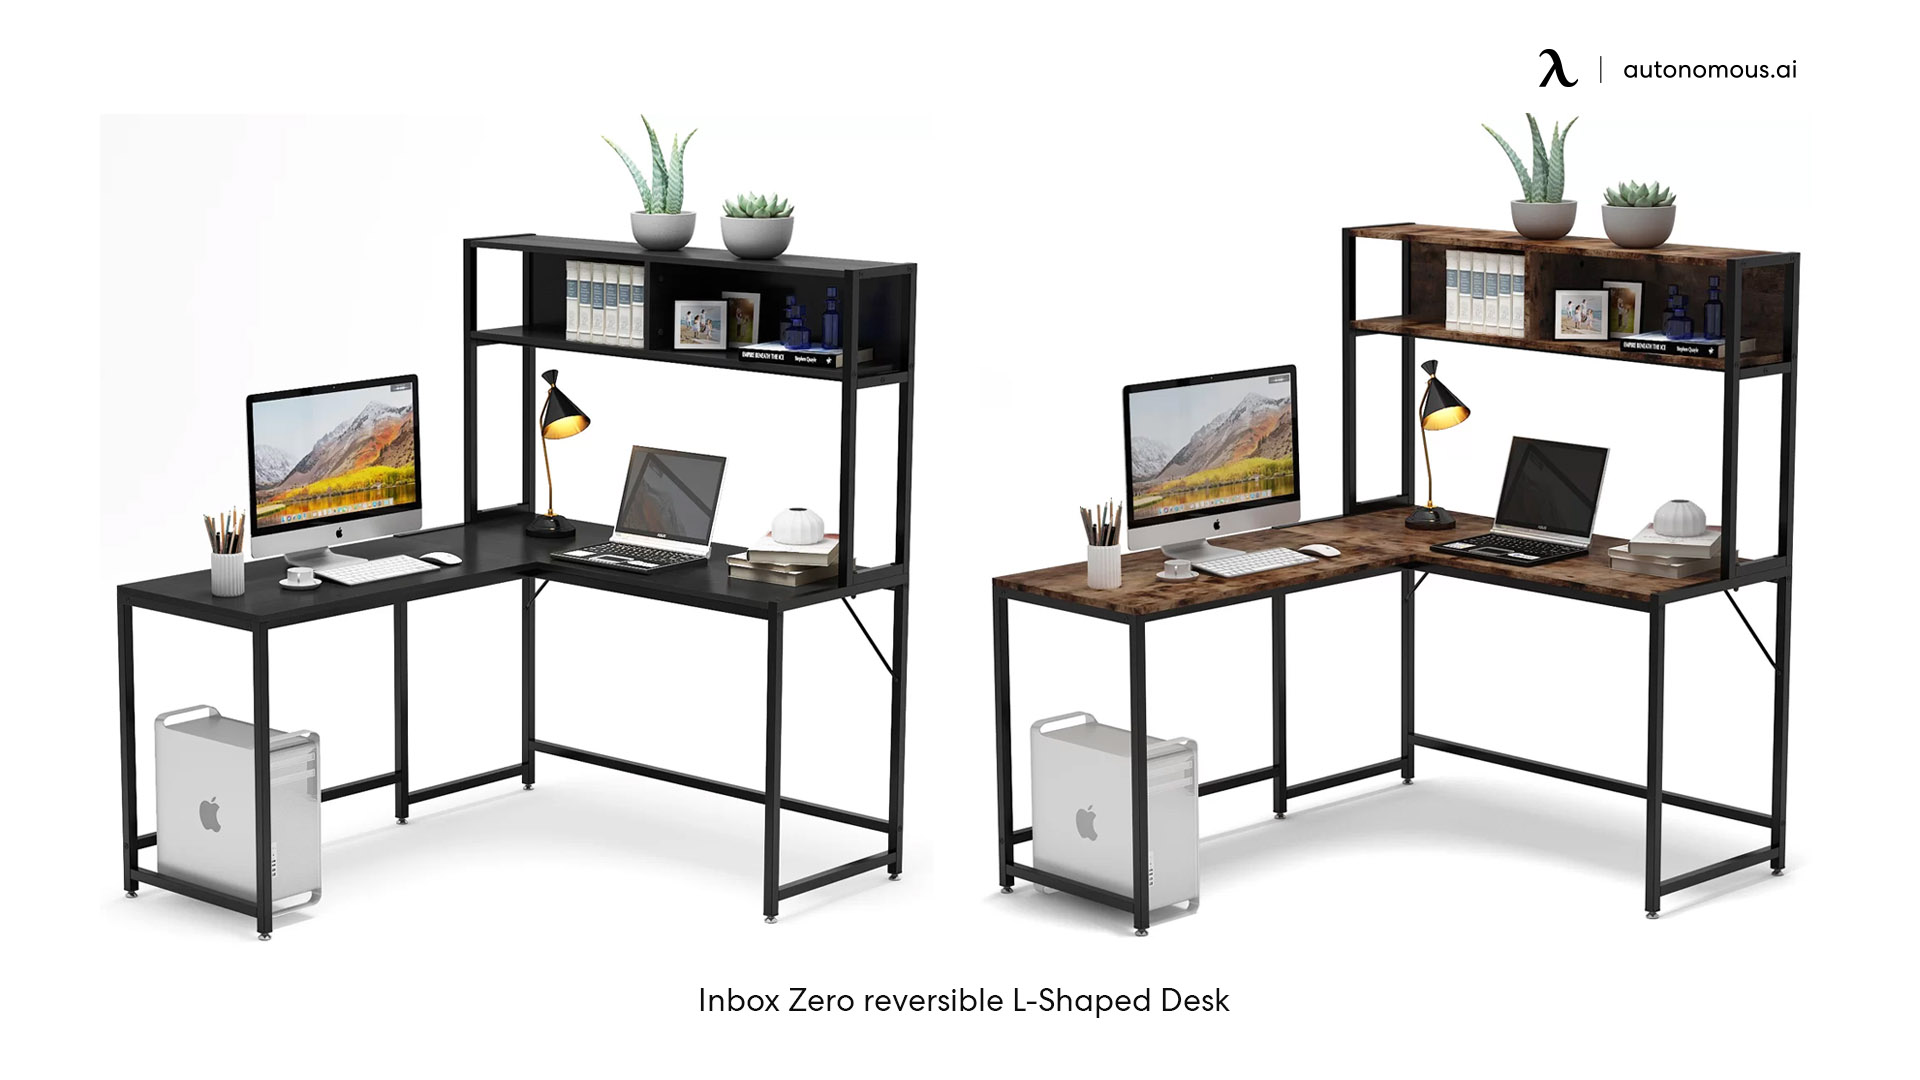 Inbox Zero reversible L-Shaped Desks